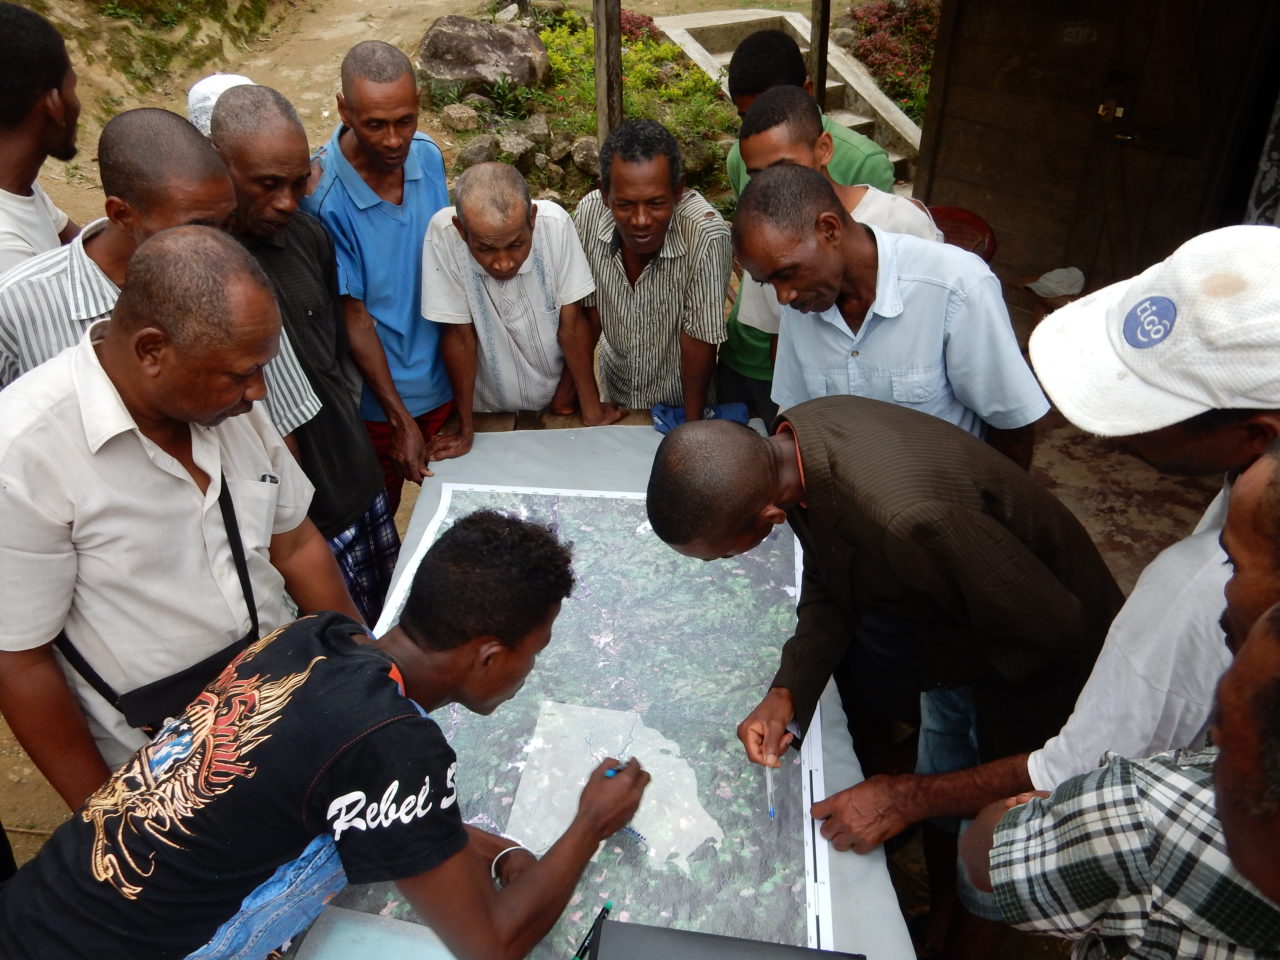 Mappatura partecipativa in uno dei siti di case study (Madagascar). Julie Zähringer, 2016